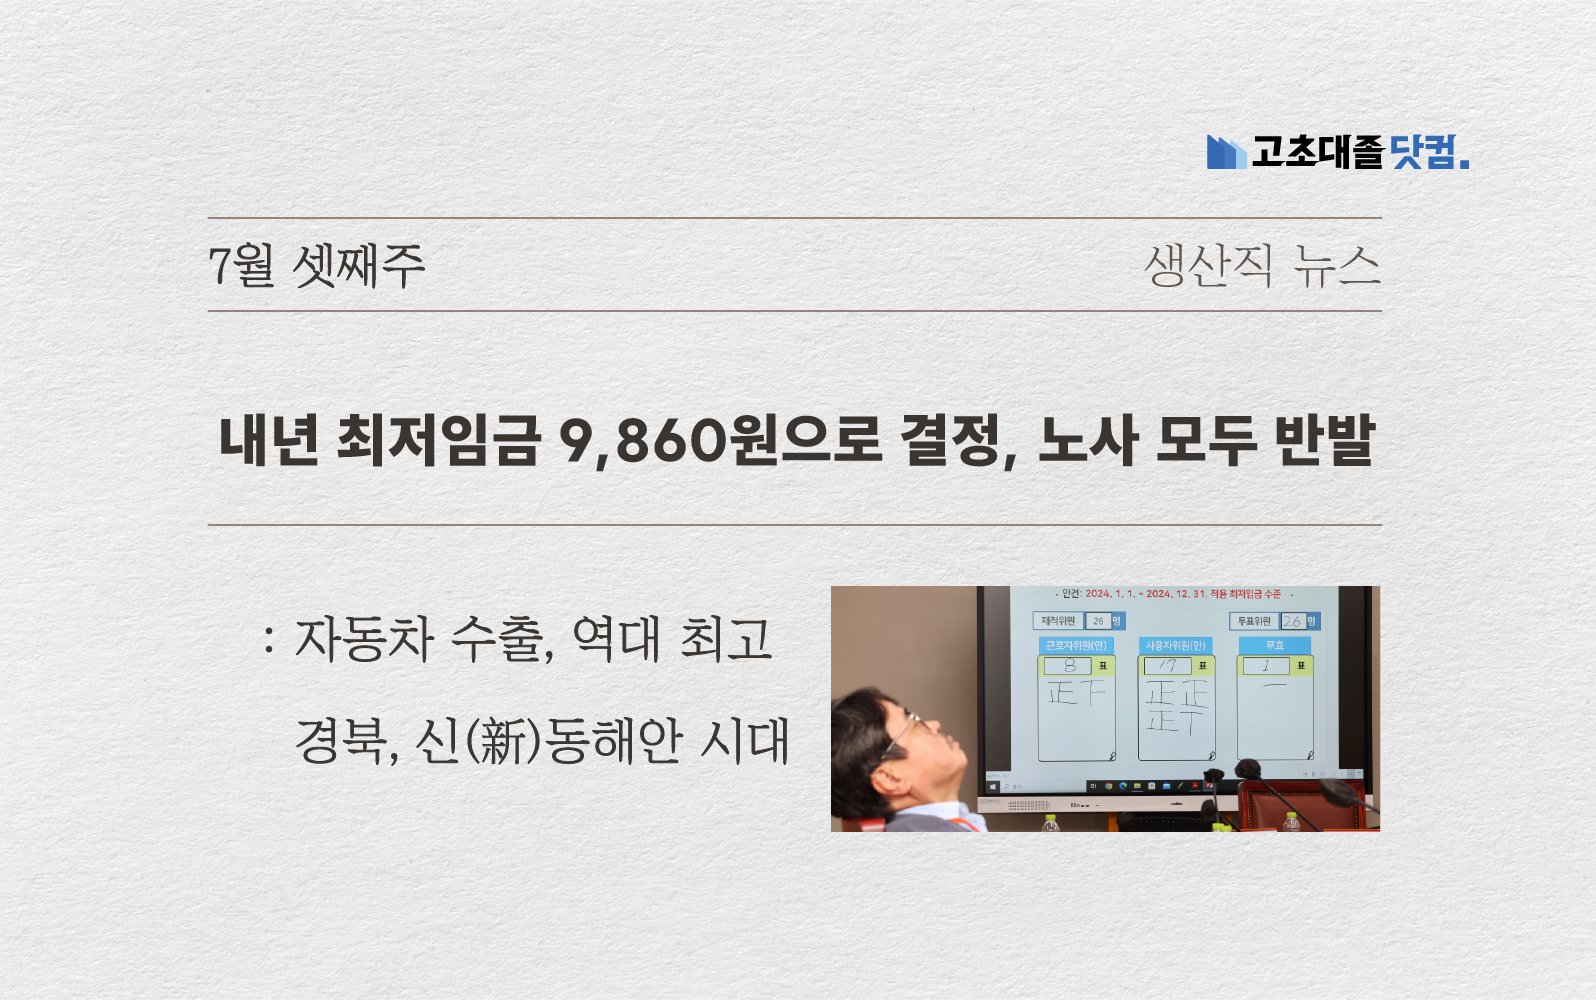 최저임금 9,860으로 인상.. 자동차 수출 역대급.. 경북의 성장세